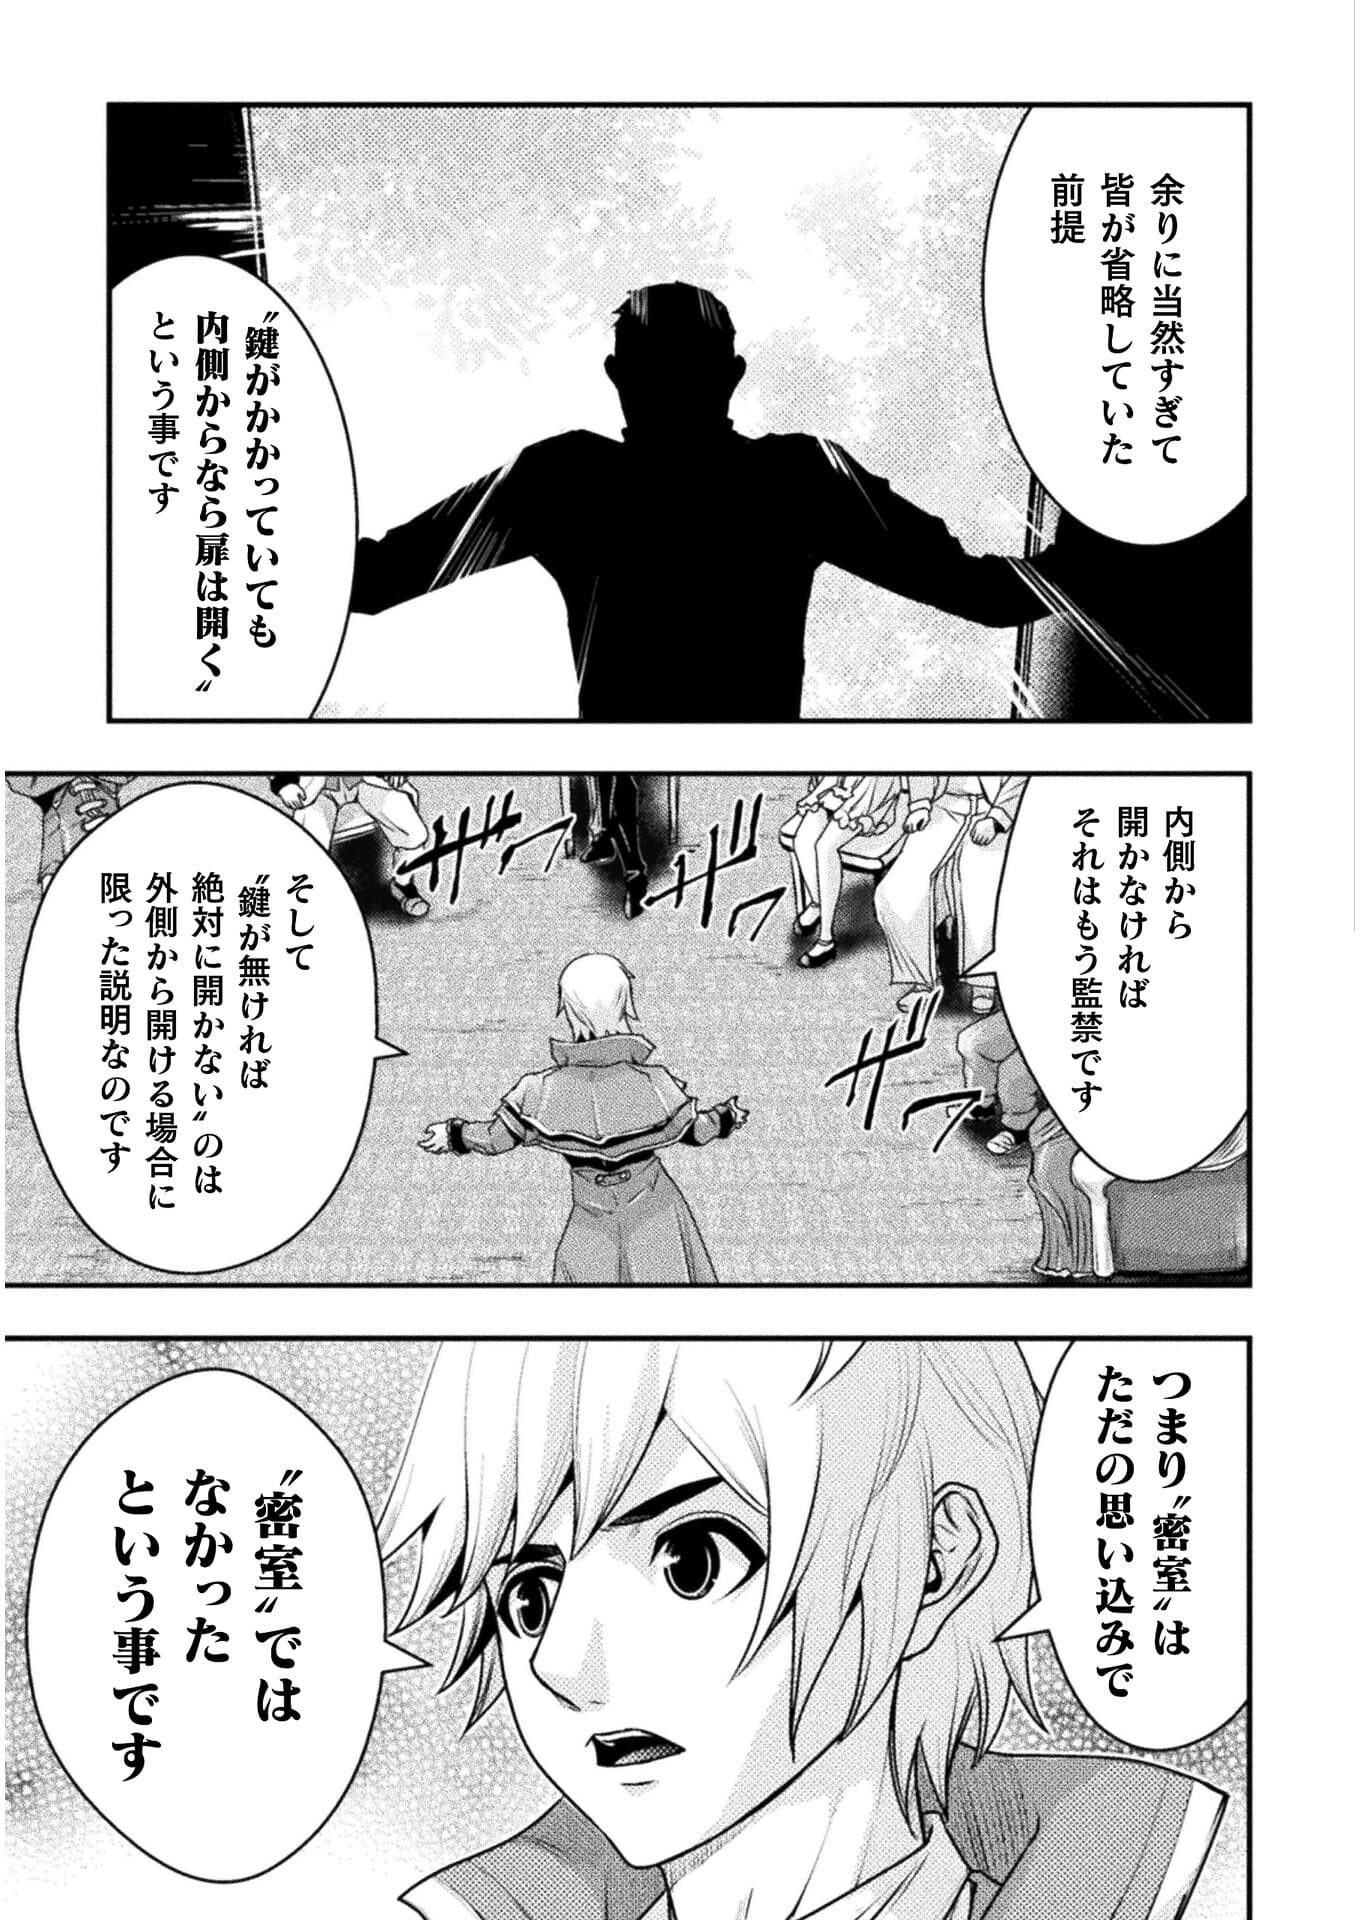 異世界の名探偵; Detectives from another world 第12話 - Page 7